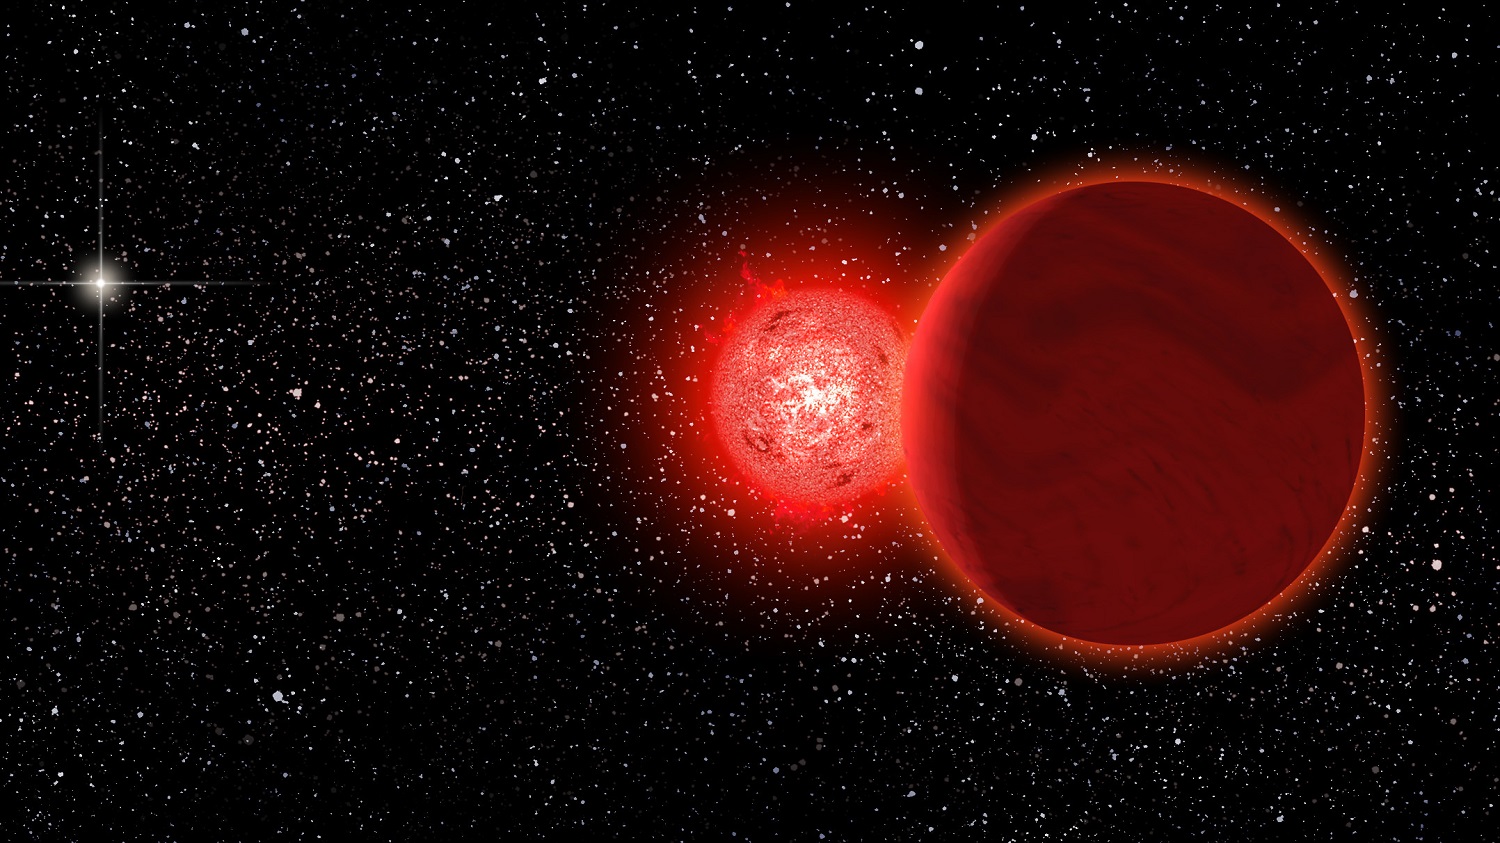 ჰყავს თუ არა მზეს ტყუპისცალი „სიკვდილის ვარსკვლავი“ - ნემესისის ვარსკვლავის თეორია